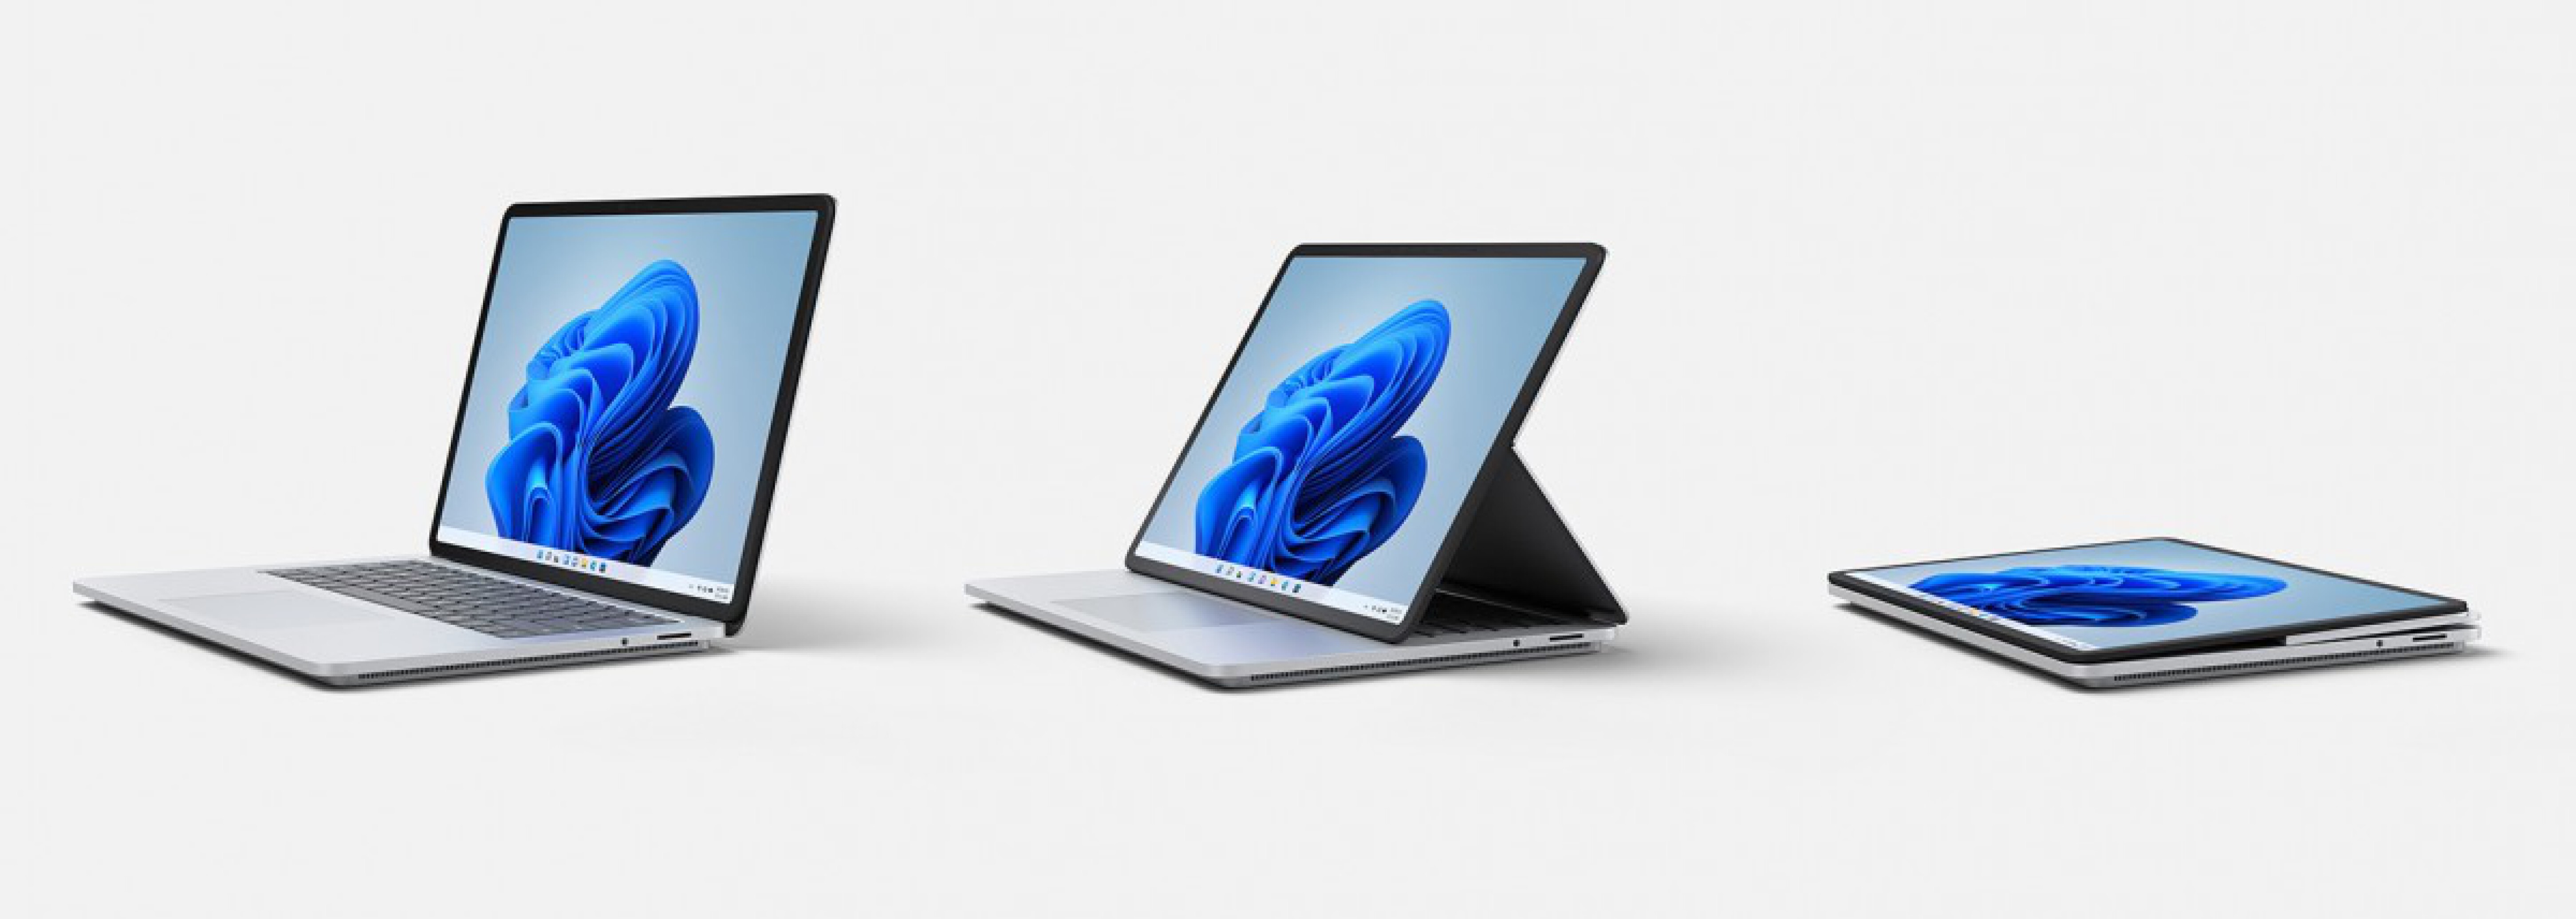  خرید،مشخصات و بهترین قیمت سرفیس لپ تاپ استدیو i5 11300H | لاکچری لپ تاپ 